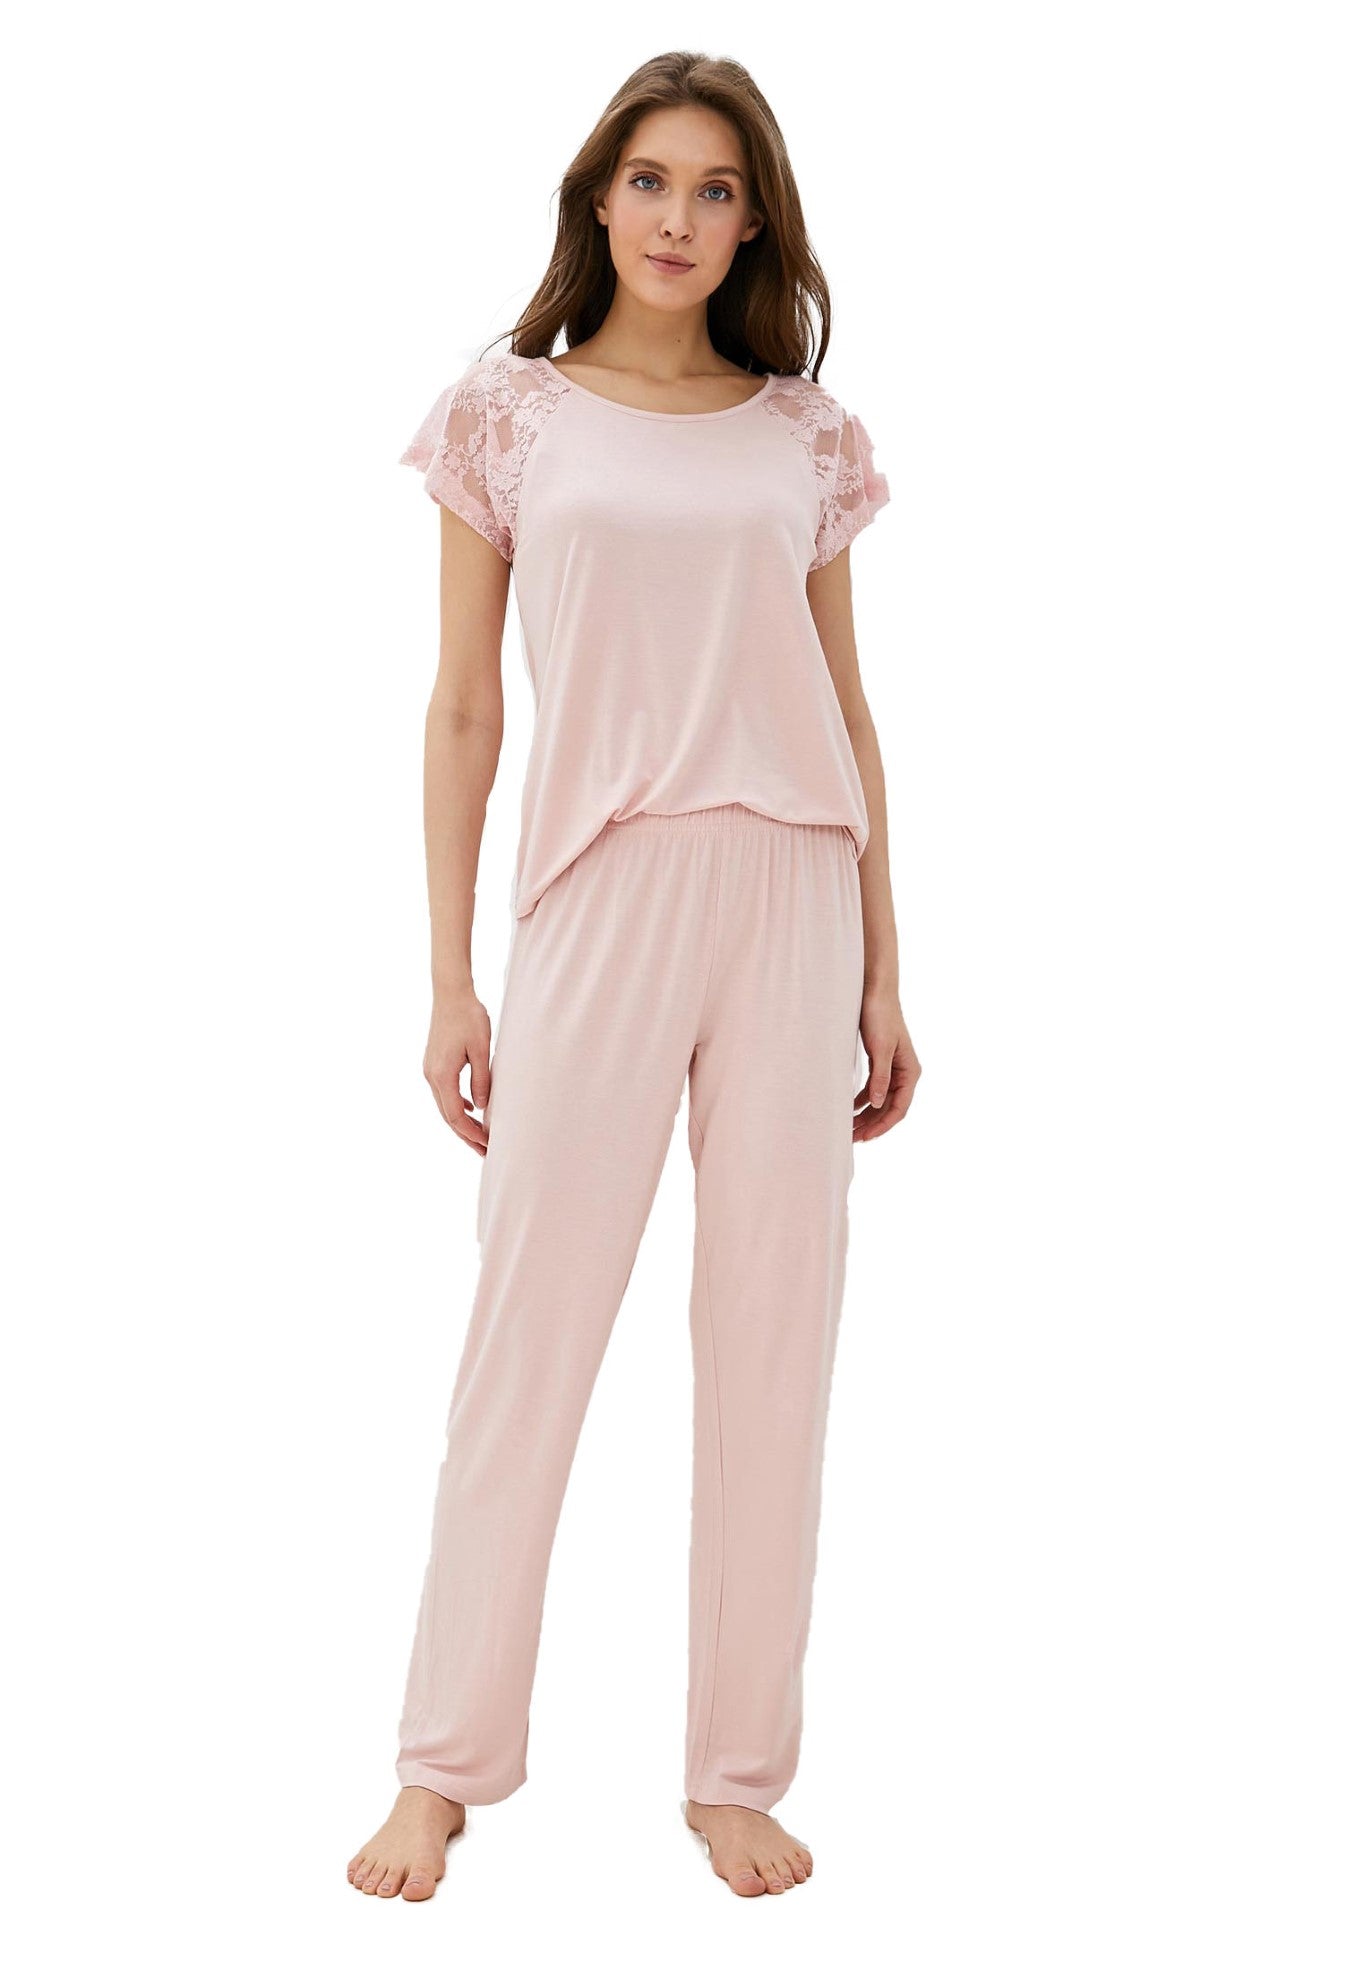 2 teilige Damen pyjama mit edler Spitze an den Schultern LMS-6015 Pink